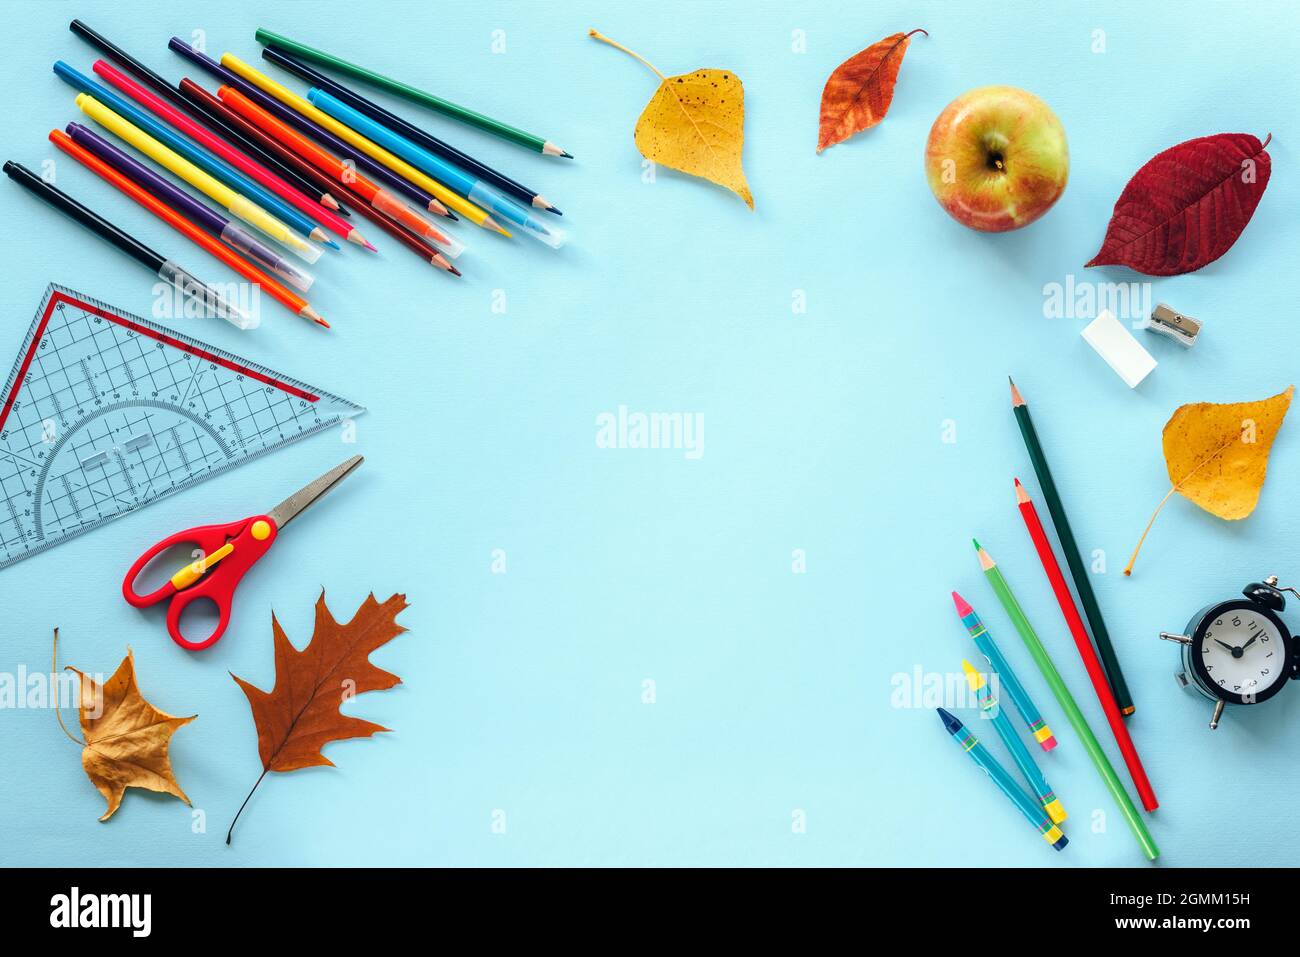 Fournitures scolaires papeterie, crayons de couleur, ciseaux, règle, réveil, pomme, feuilles d'automne sur fond bleu. Concept de retour à l'école. Vue de dessus Banque D'Images